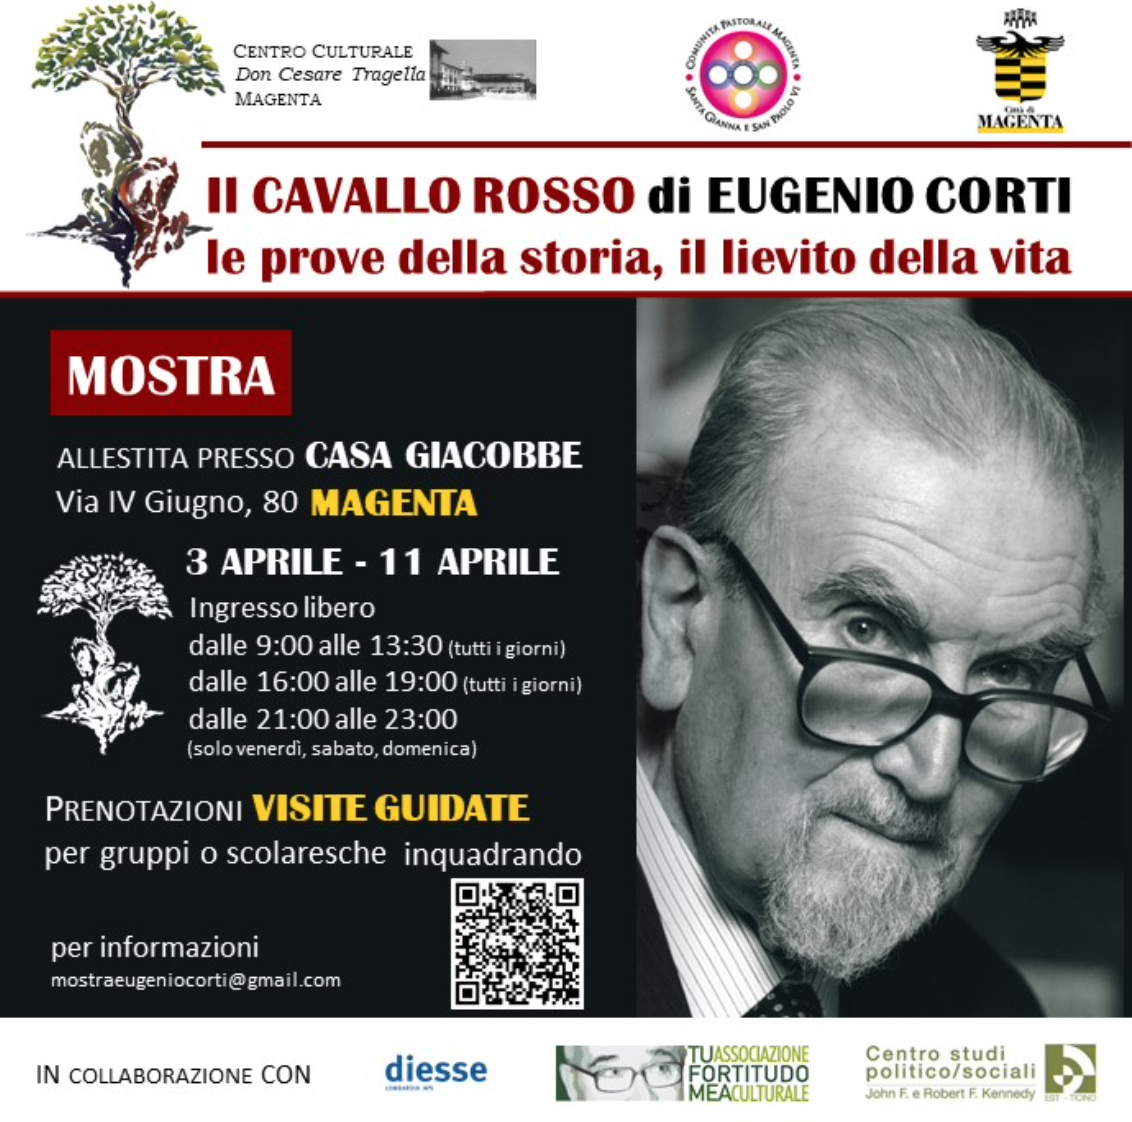 Featured image for “Magenta (Mi): Il cavallo rosso di Eugenio Corti. Mostra #meeting23”